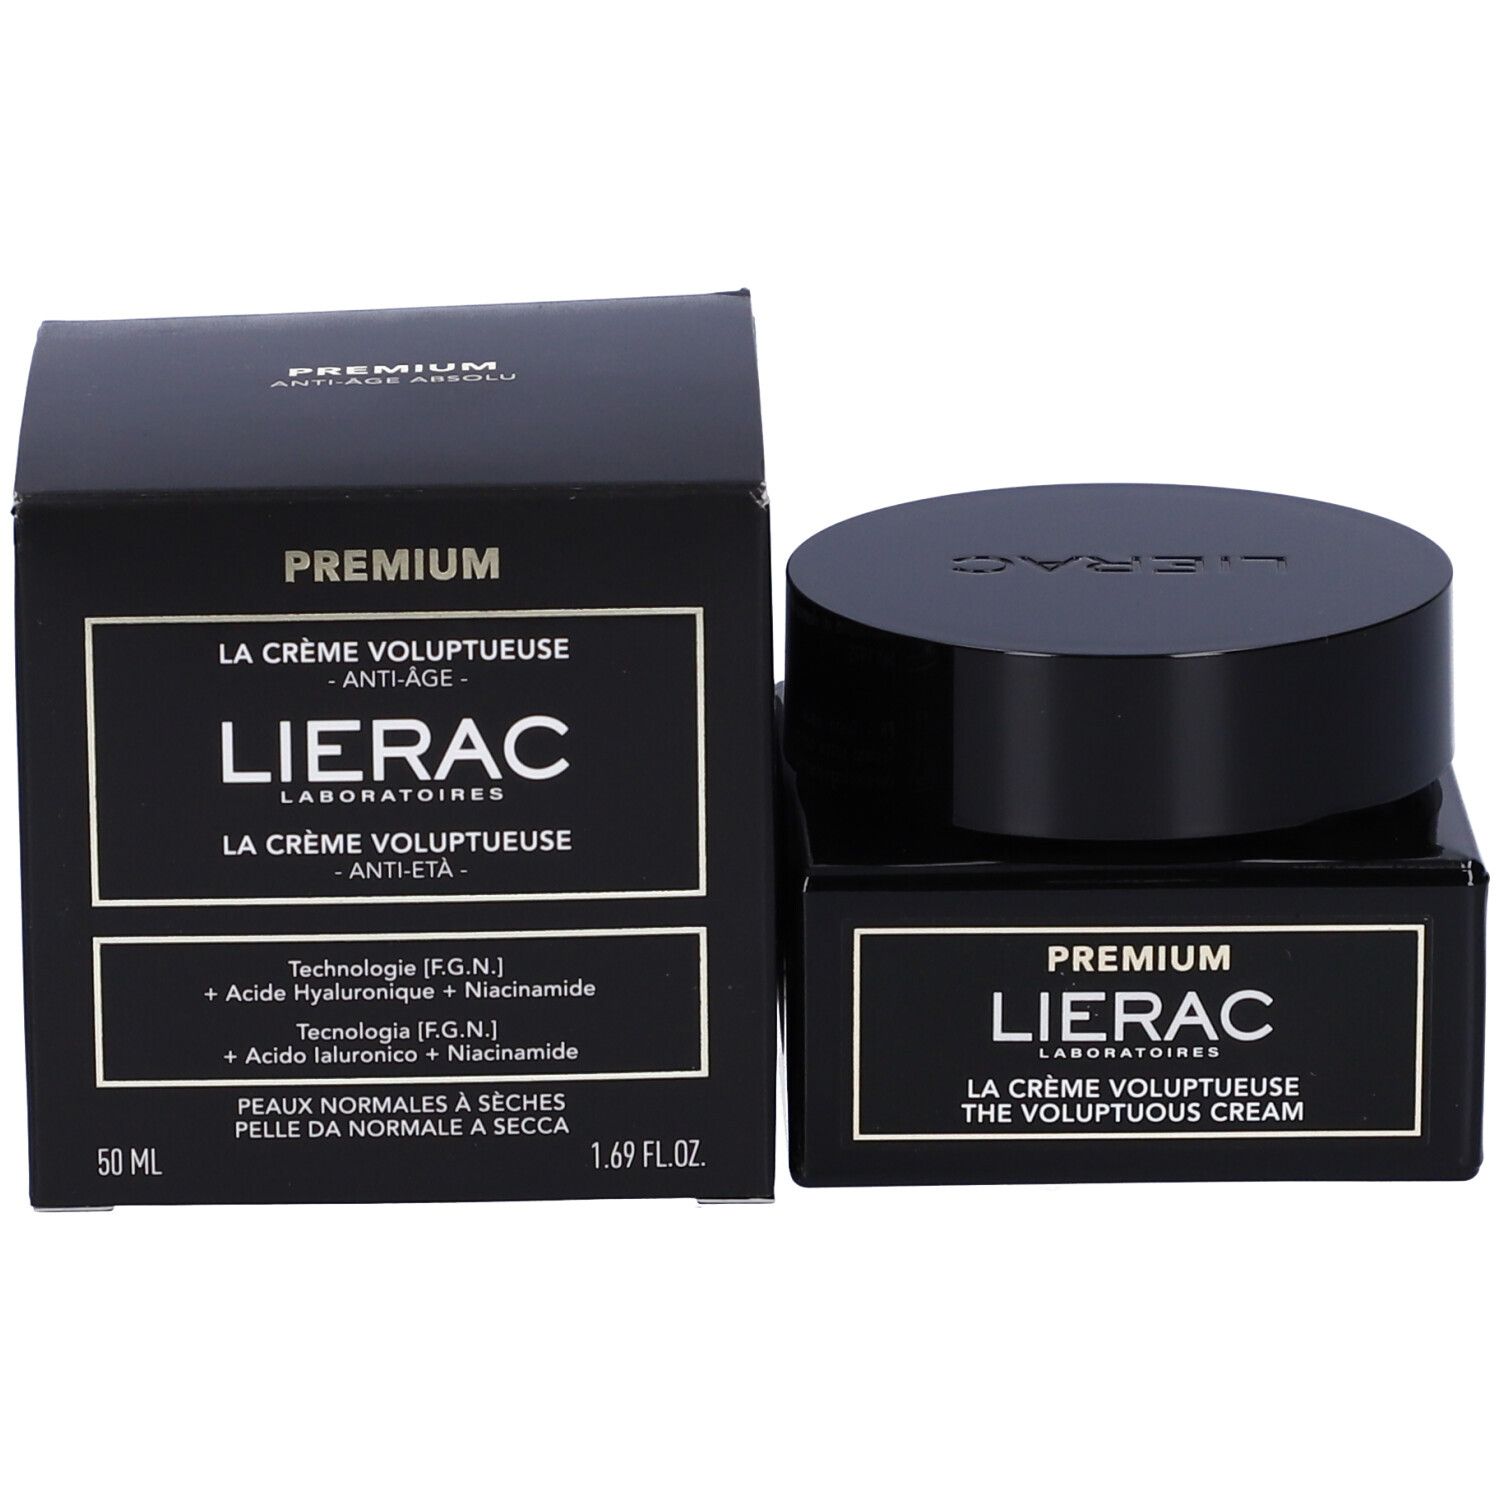 Lierac Premium La Crème Voluptueuse